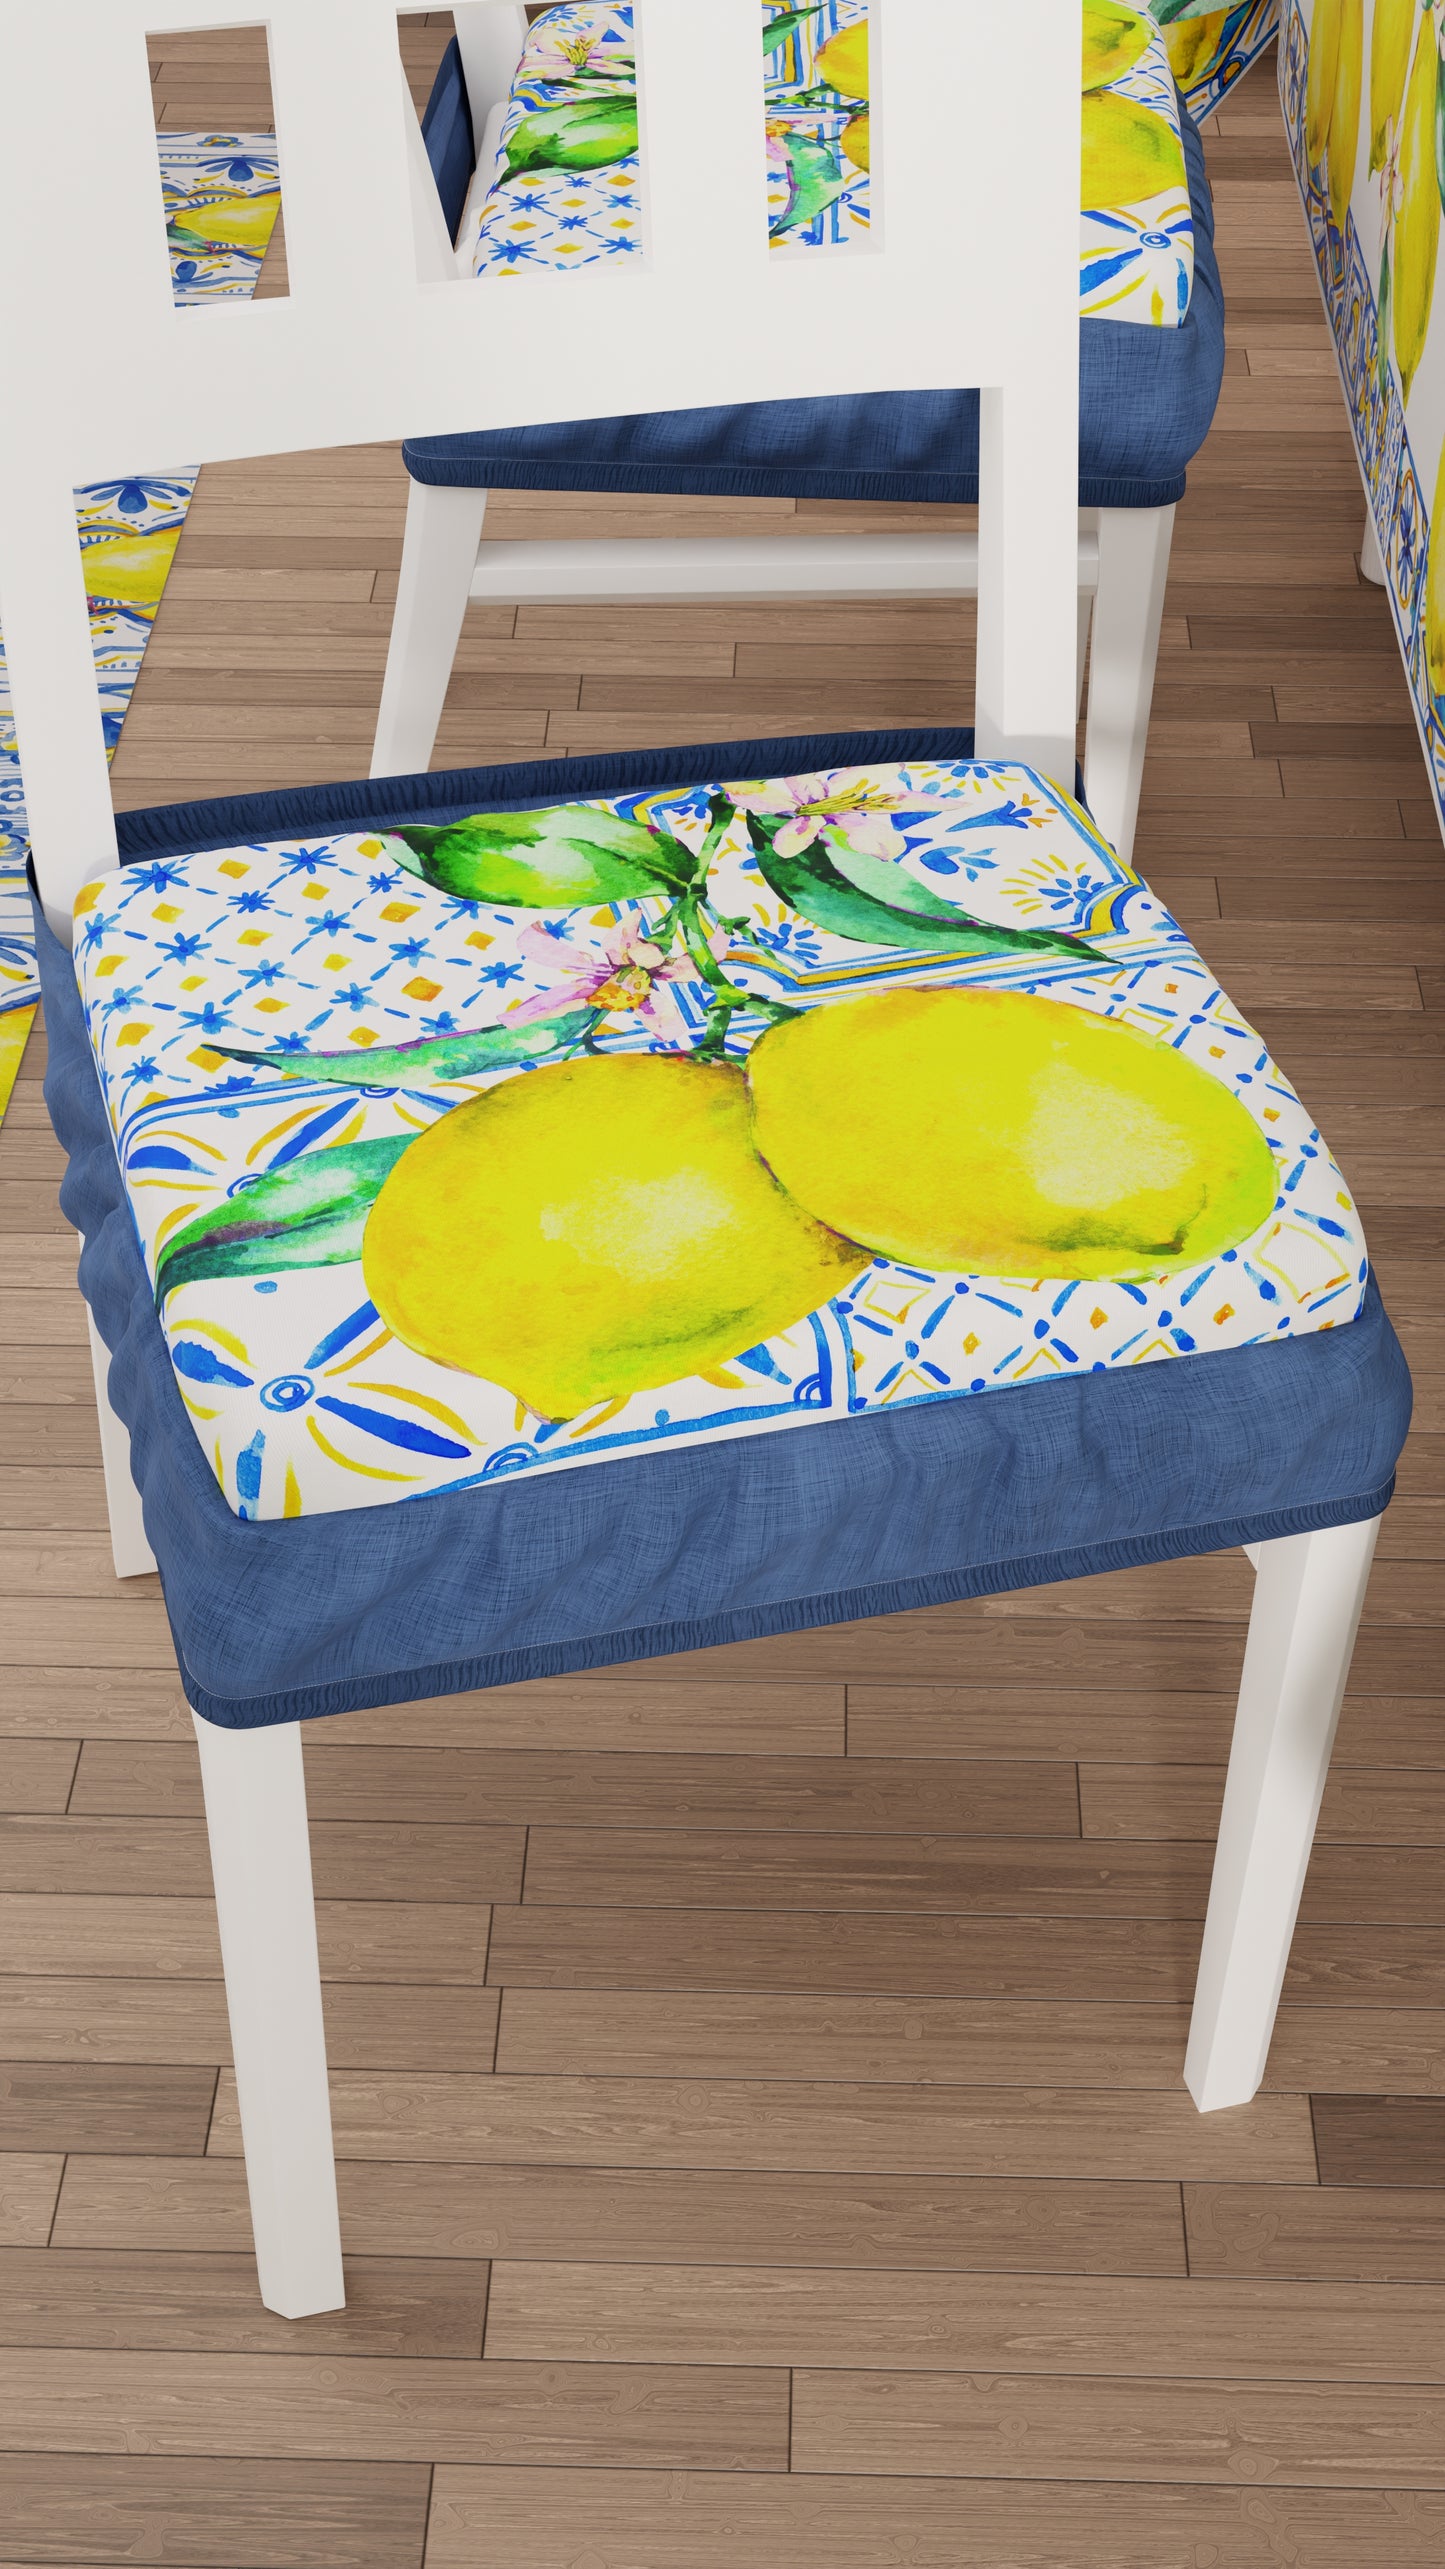 Chair Cushions with Elastic Digital Print Chair Cover 2 Pieces Vietri-01